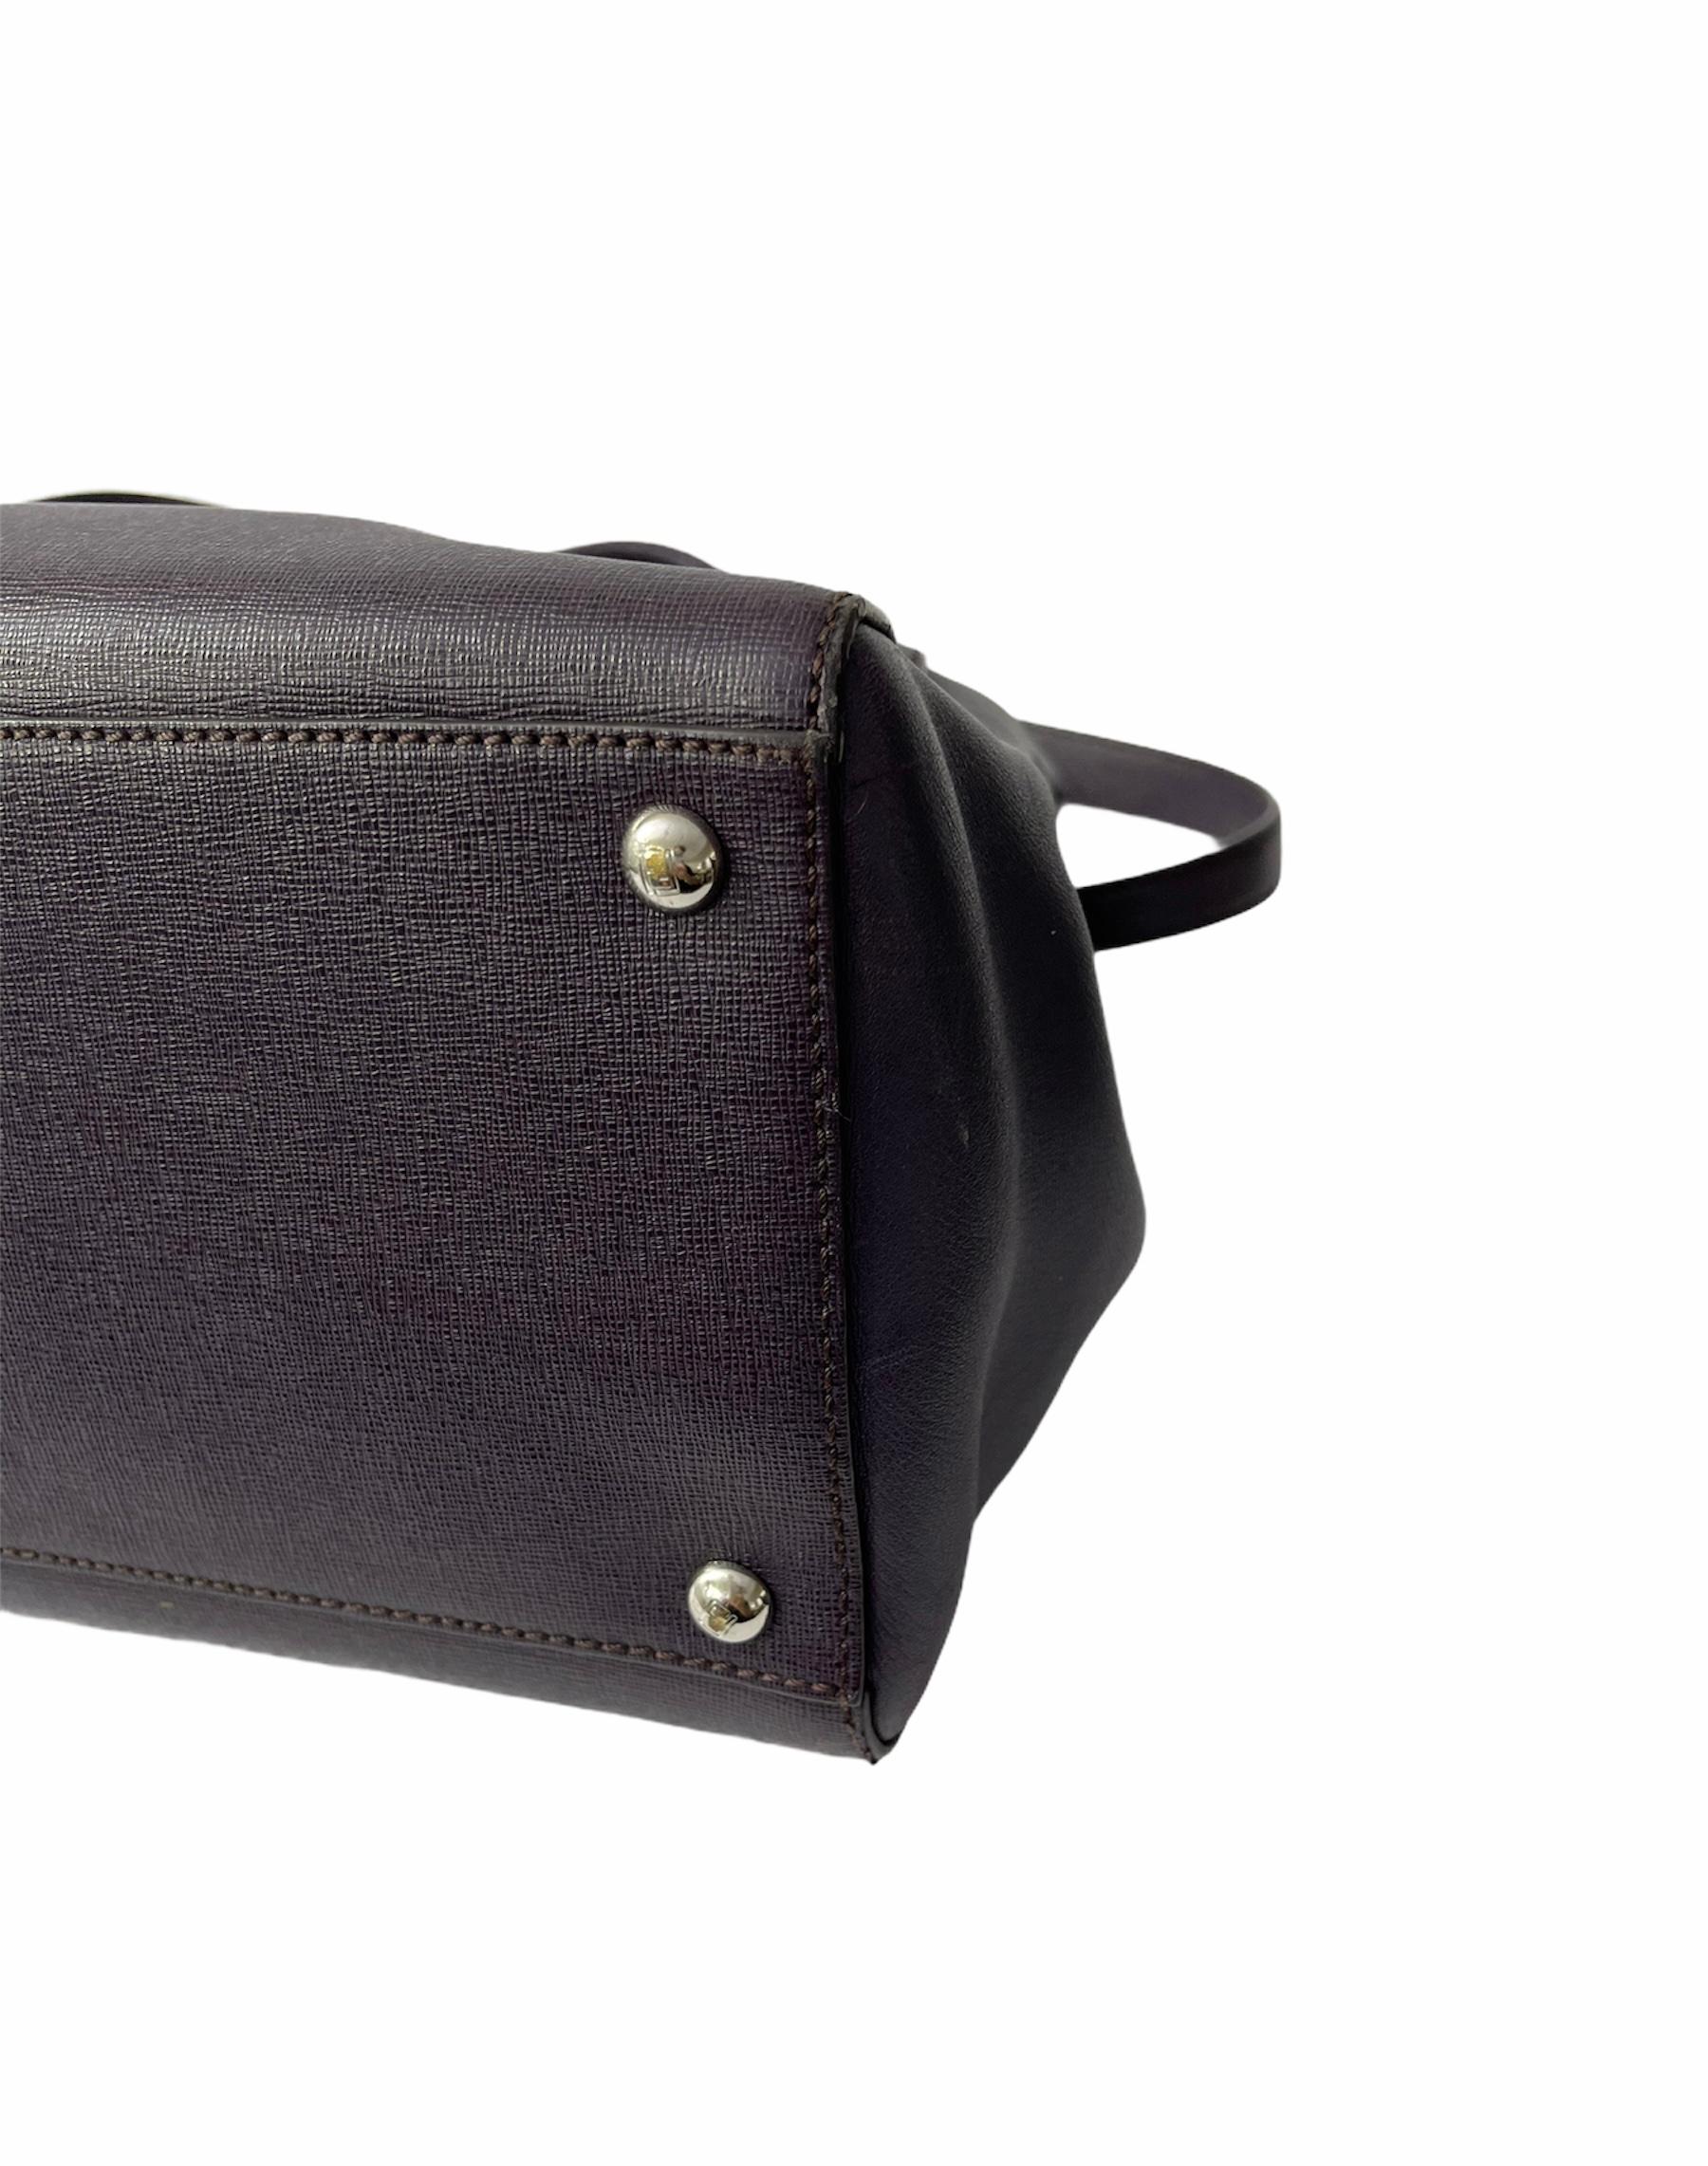 Fendi Purple Leather 2Jours Handbag 2